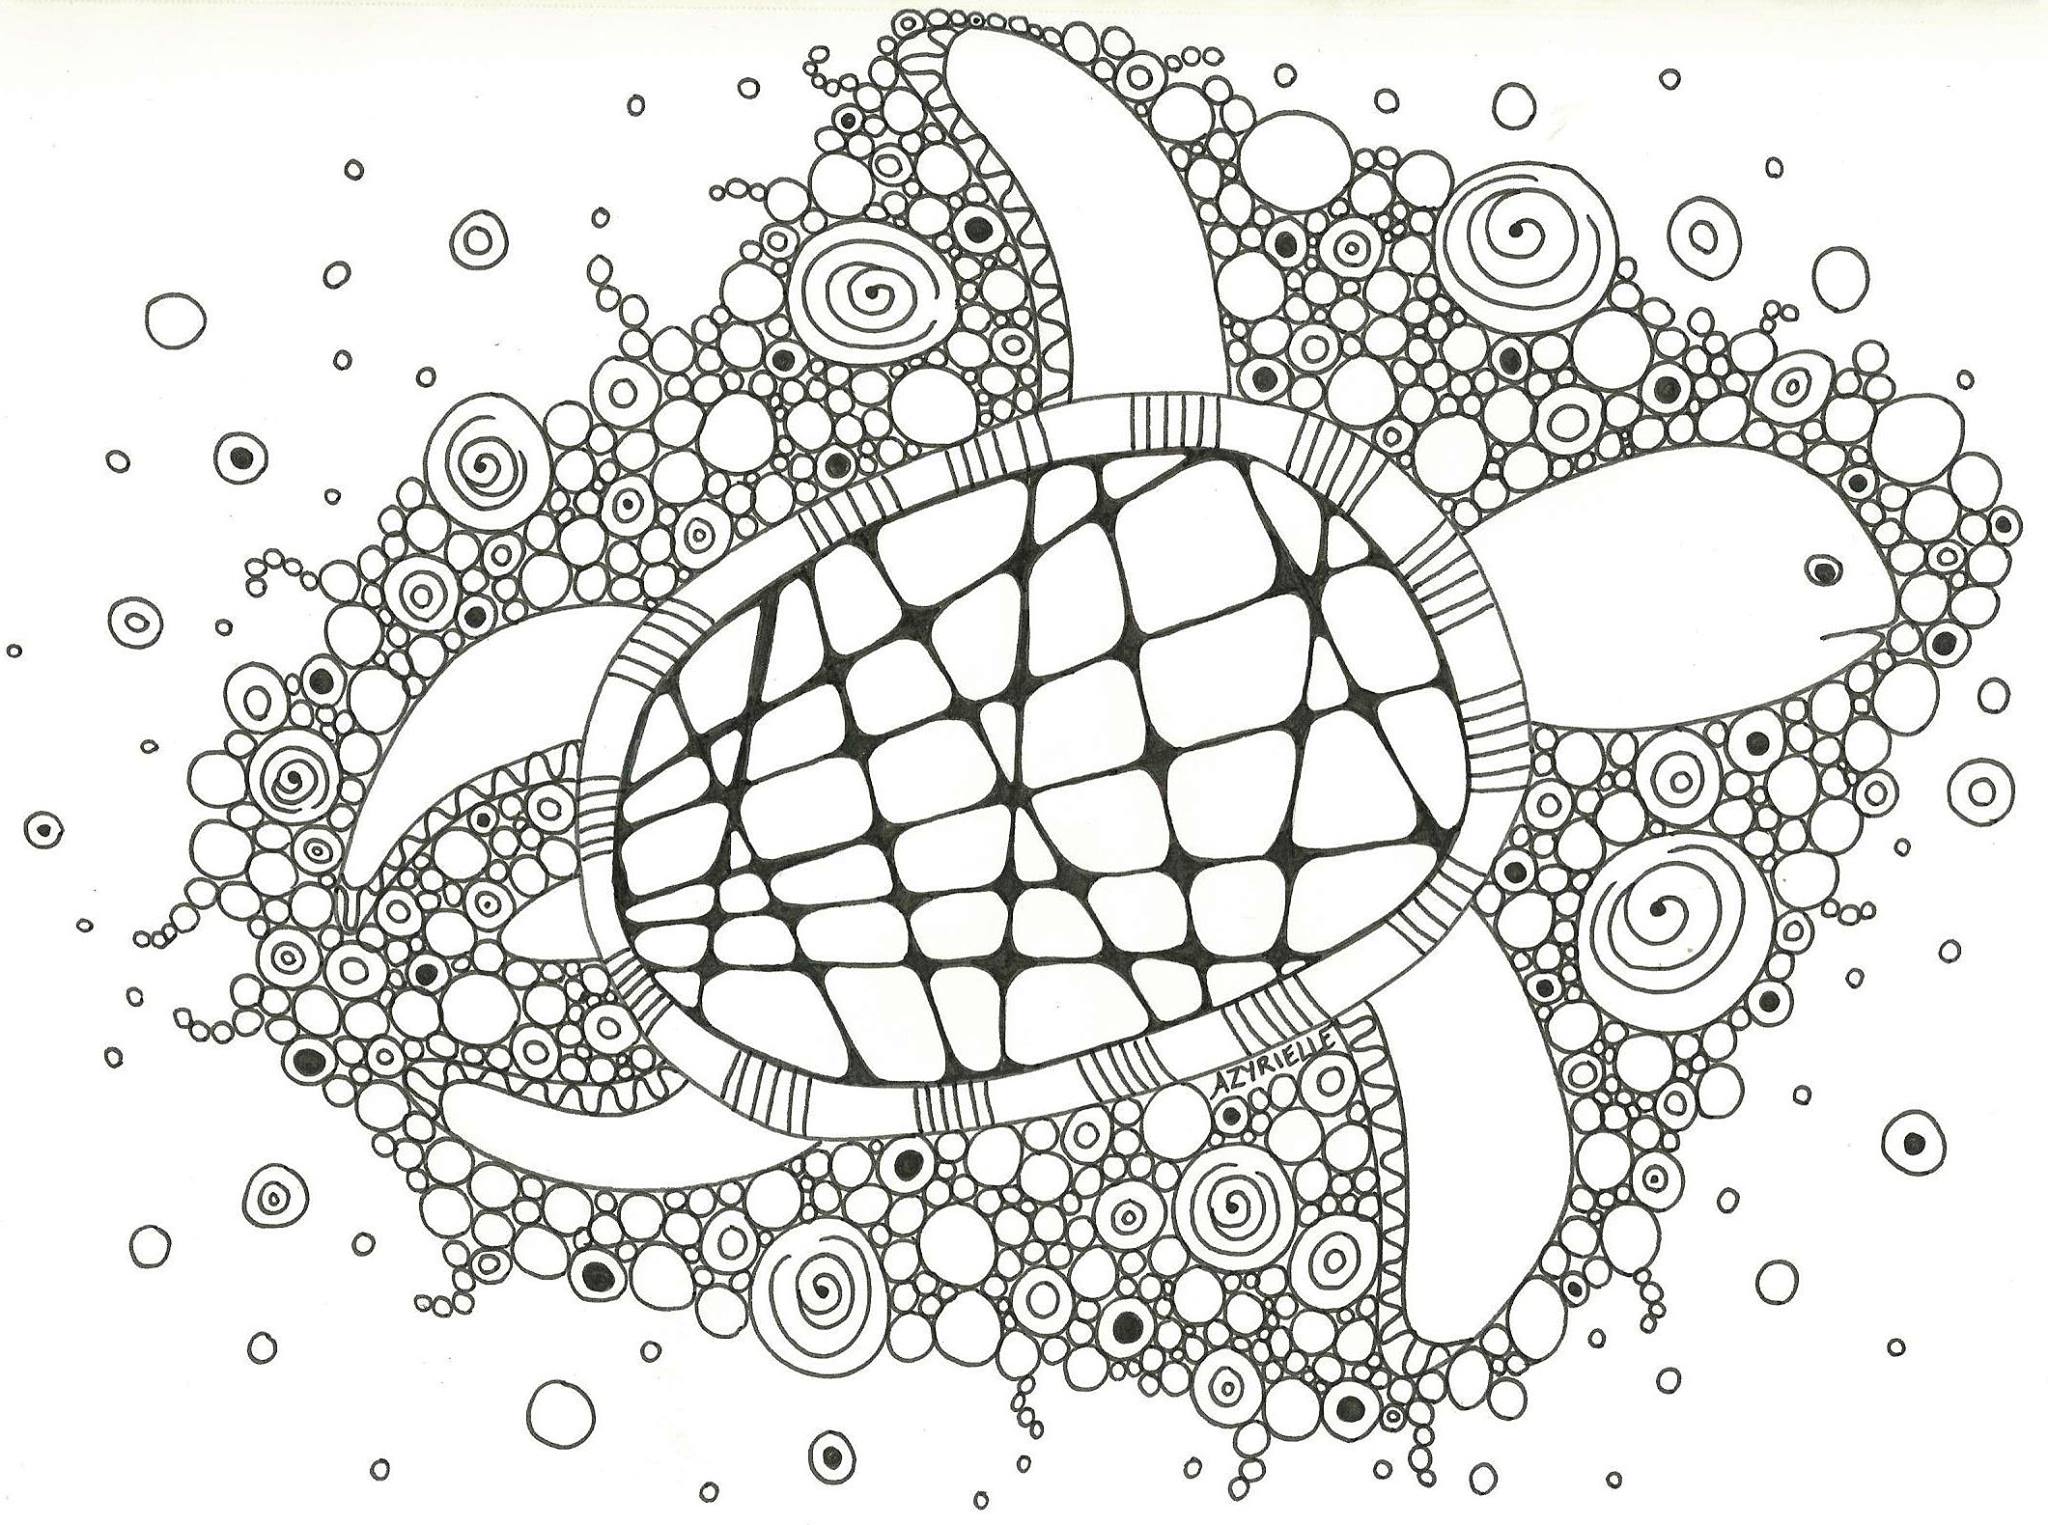 La tortuga y sus burbujas, Artista : Azyrielle